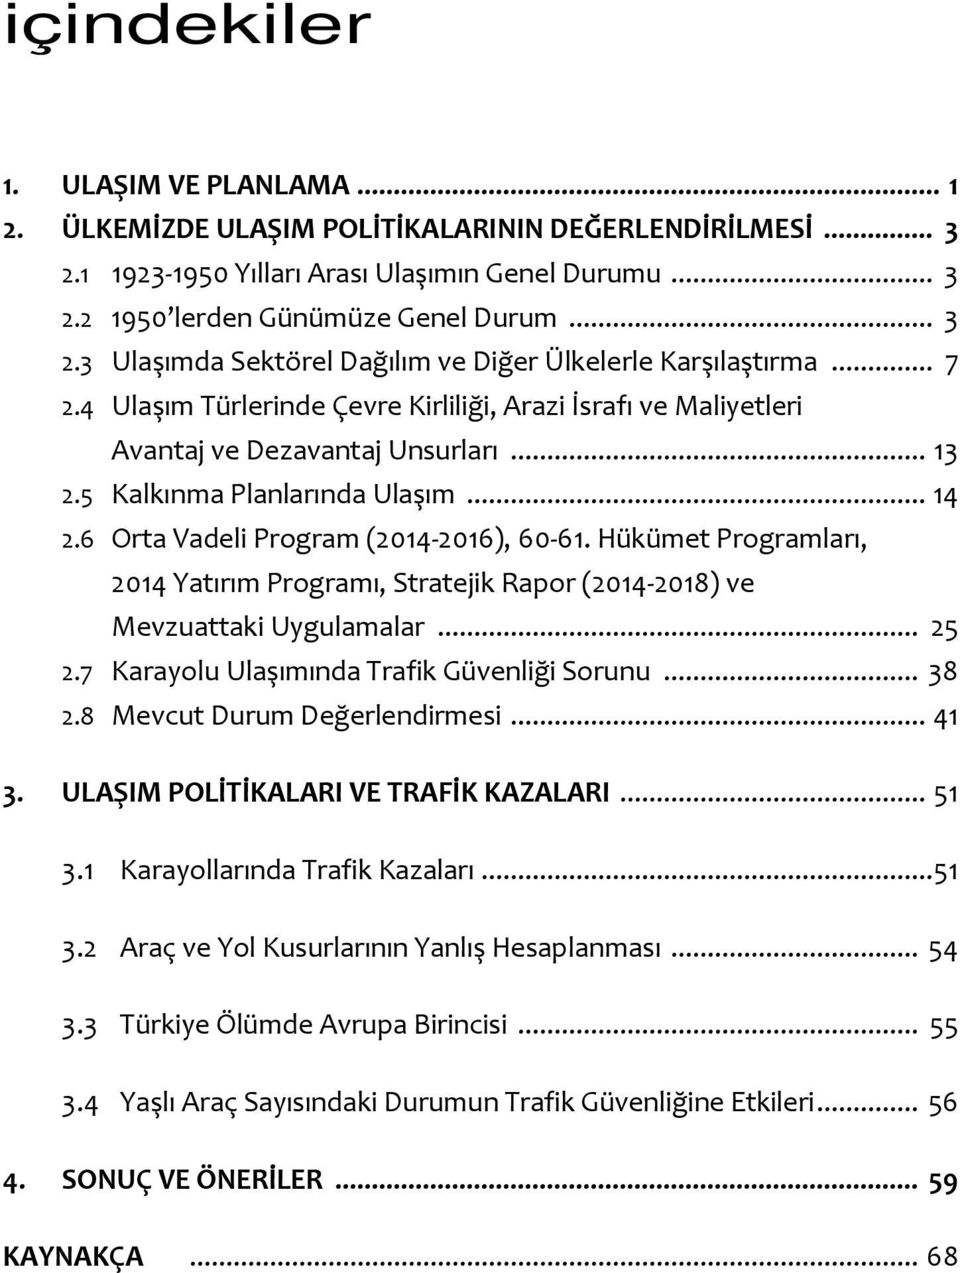 Hükümet Programları, 2014 Yatırım Programı, Stratejik Rapor (2014-2018) ve Mevzuattaki Uygulamalar... 25 2.7 Karayolu Ulaşımında Trafik Güvenliği Sorunu... 38 2.8 Mevcut Durum Değerlendirmesi... 41 3.